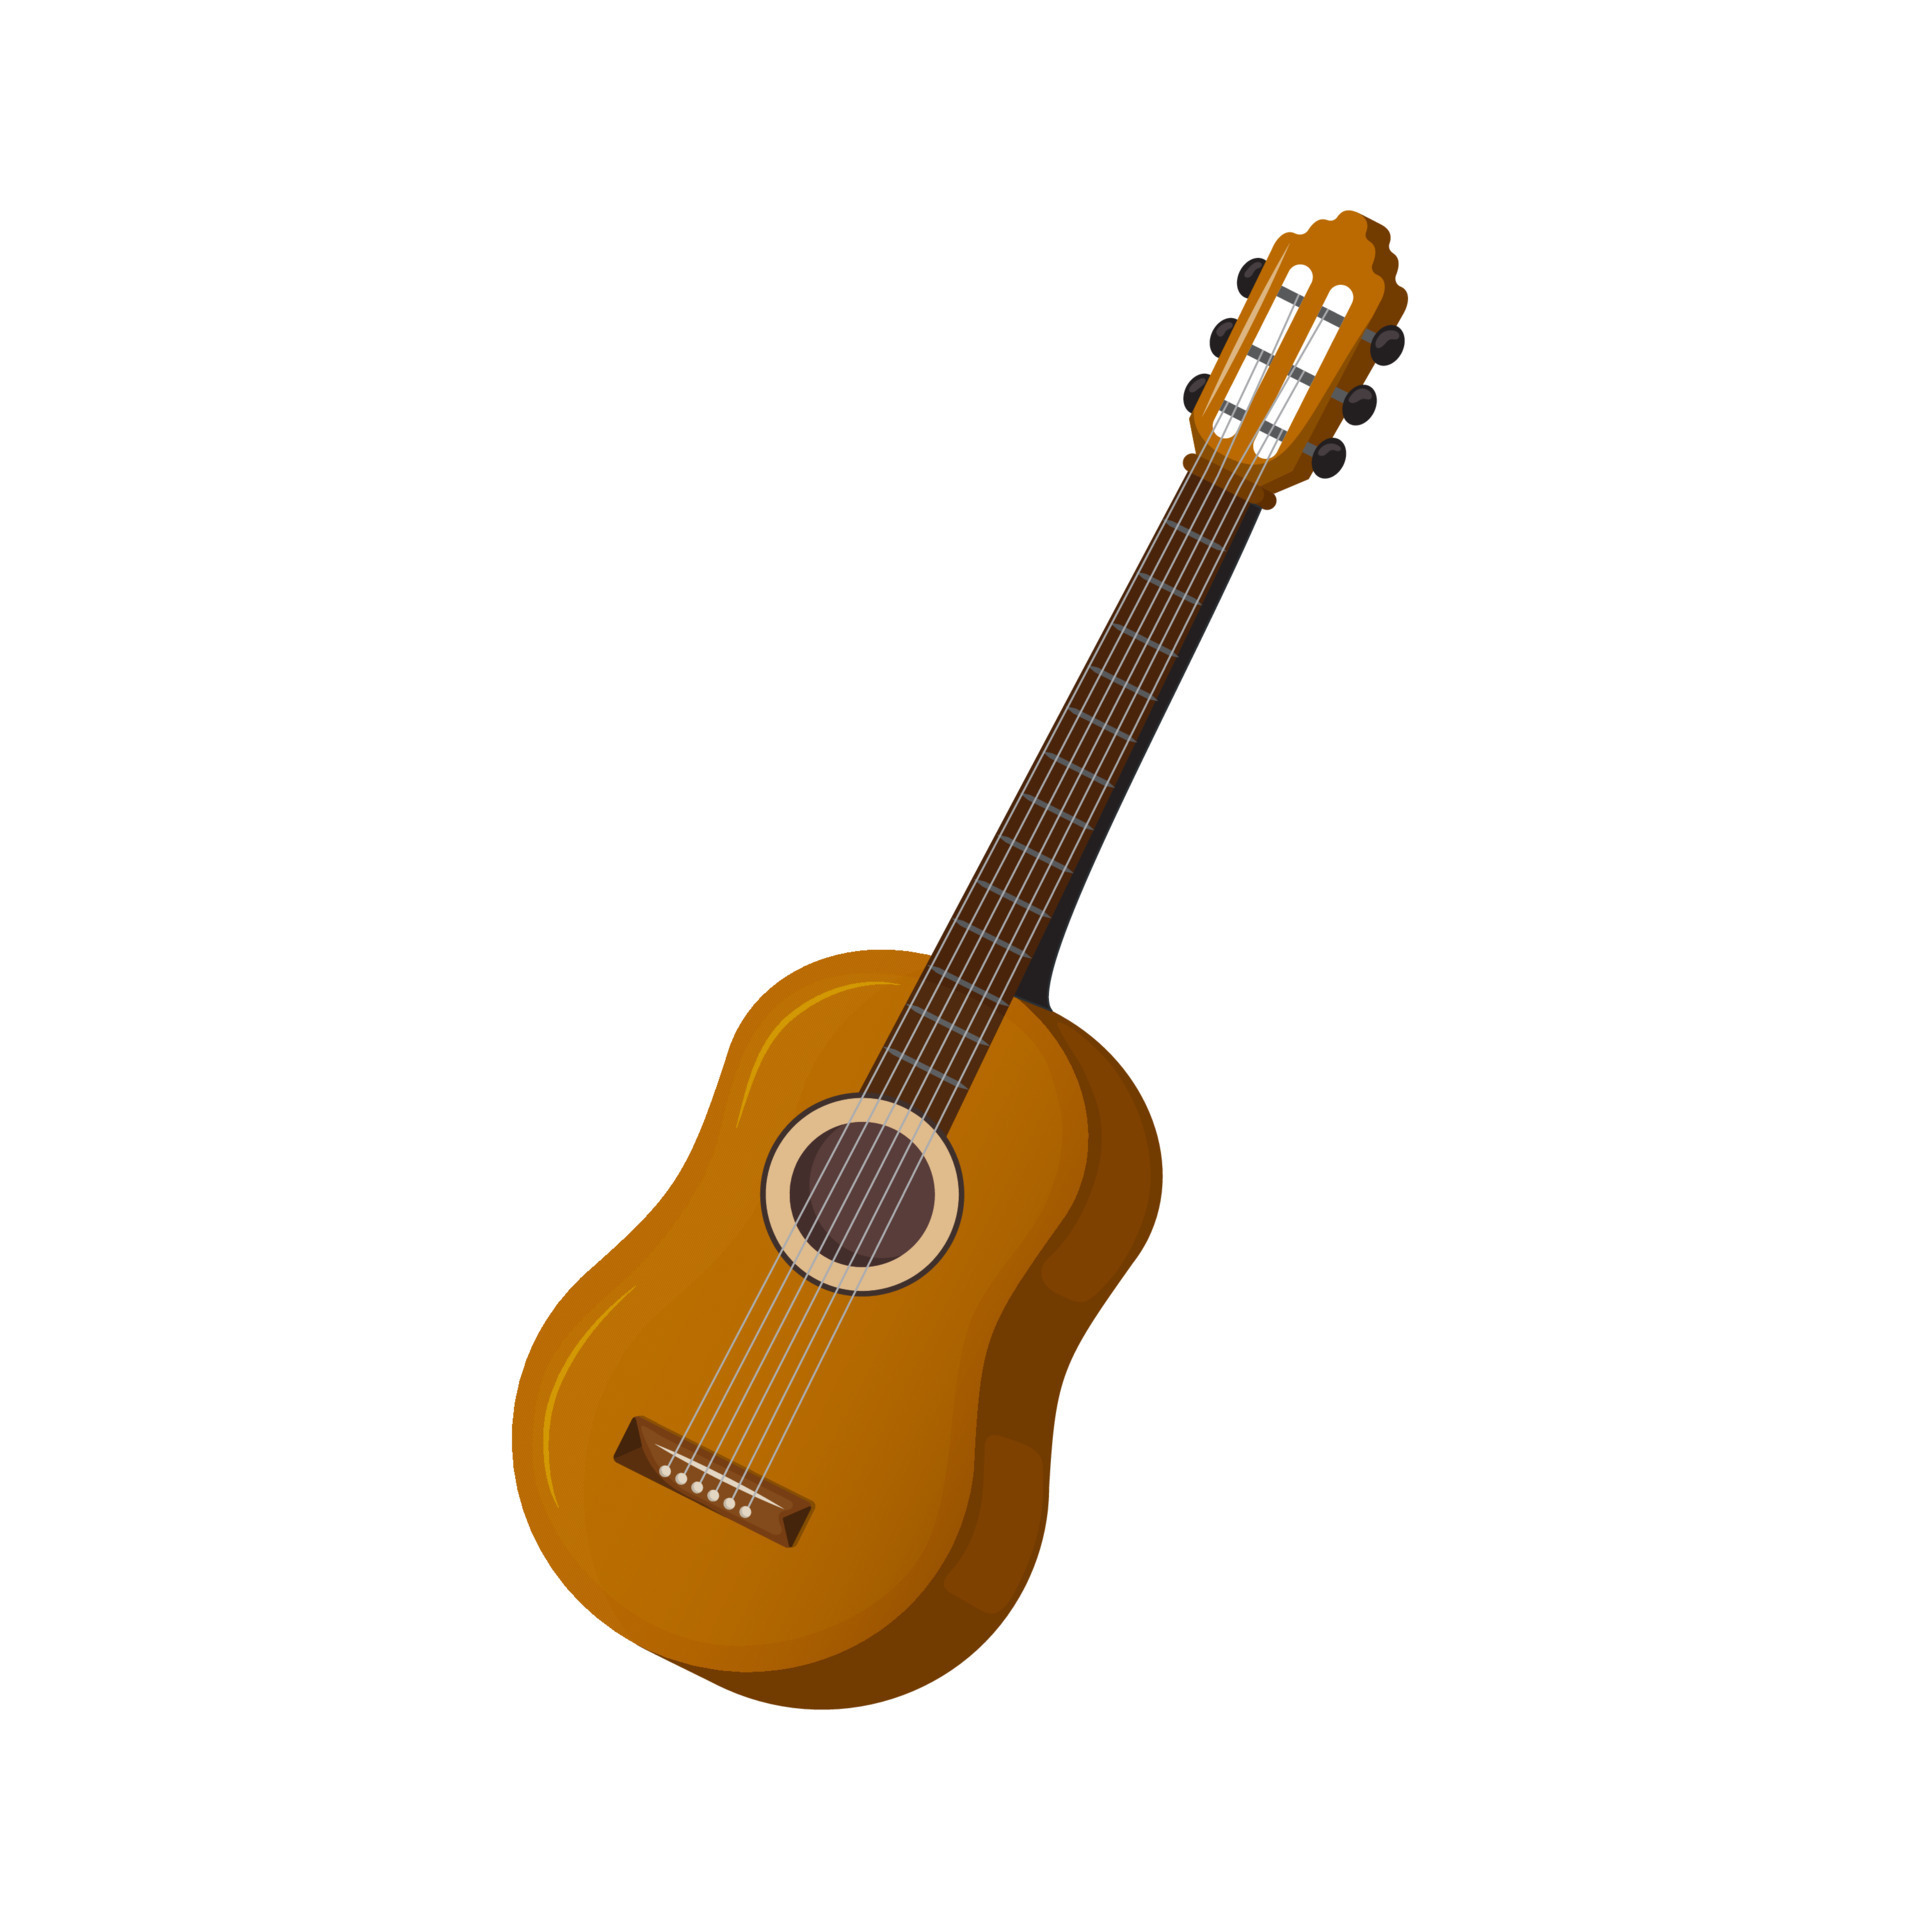 instrument de musique à cordes - guitare. guitare classique en bois.  illustration vectorielle isolée sur fond blanc. 17603185 Art vectoriel chez  Vecteezy